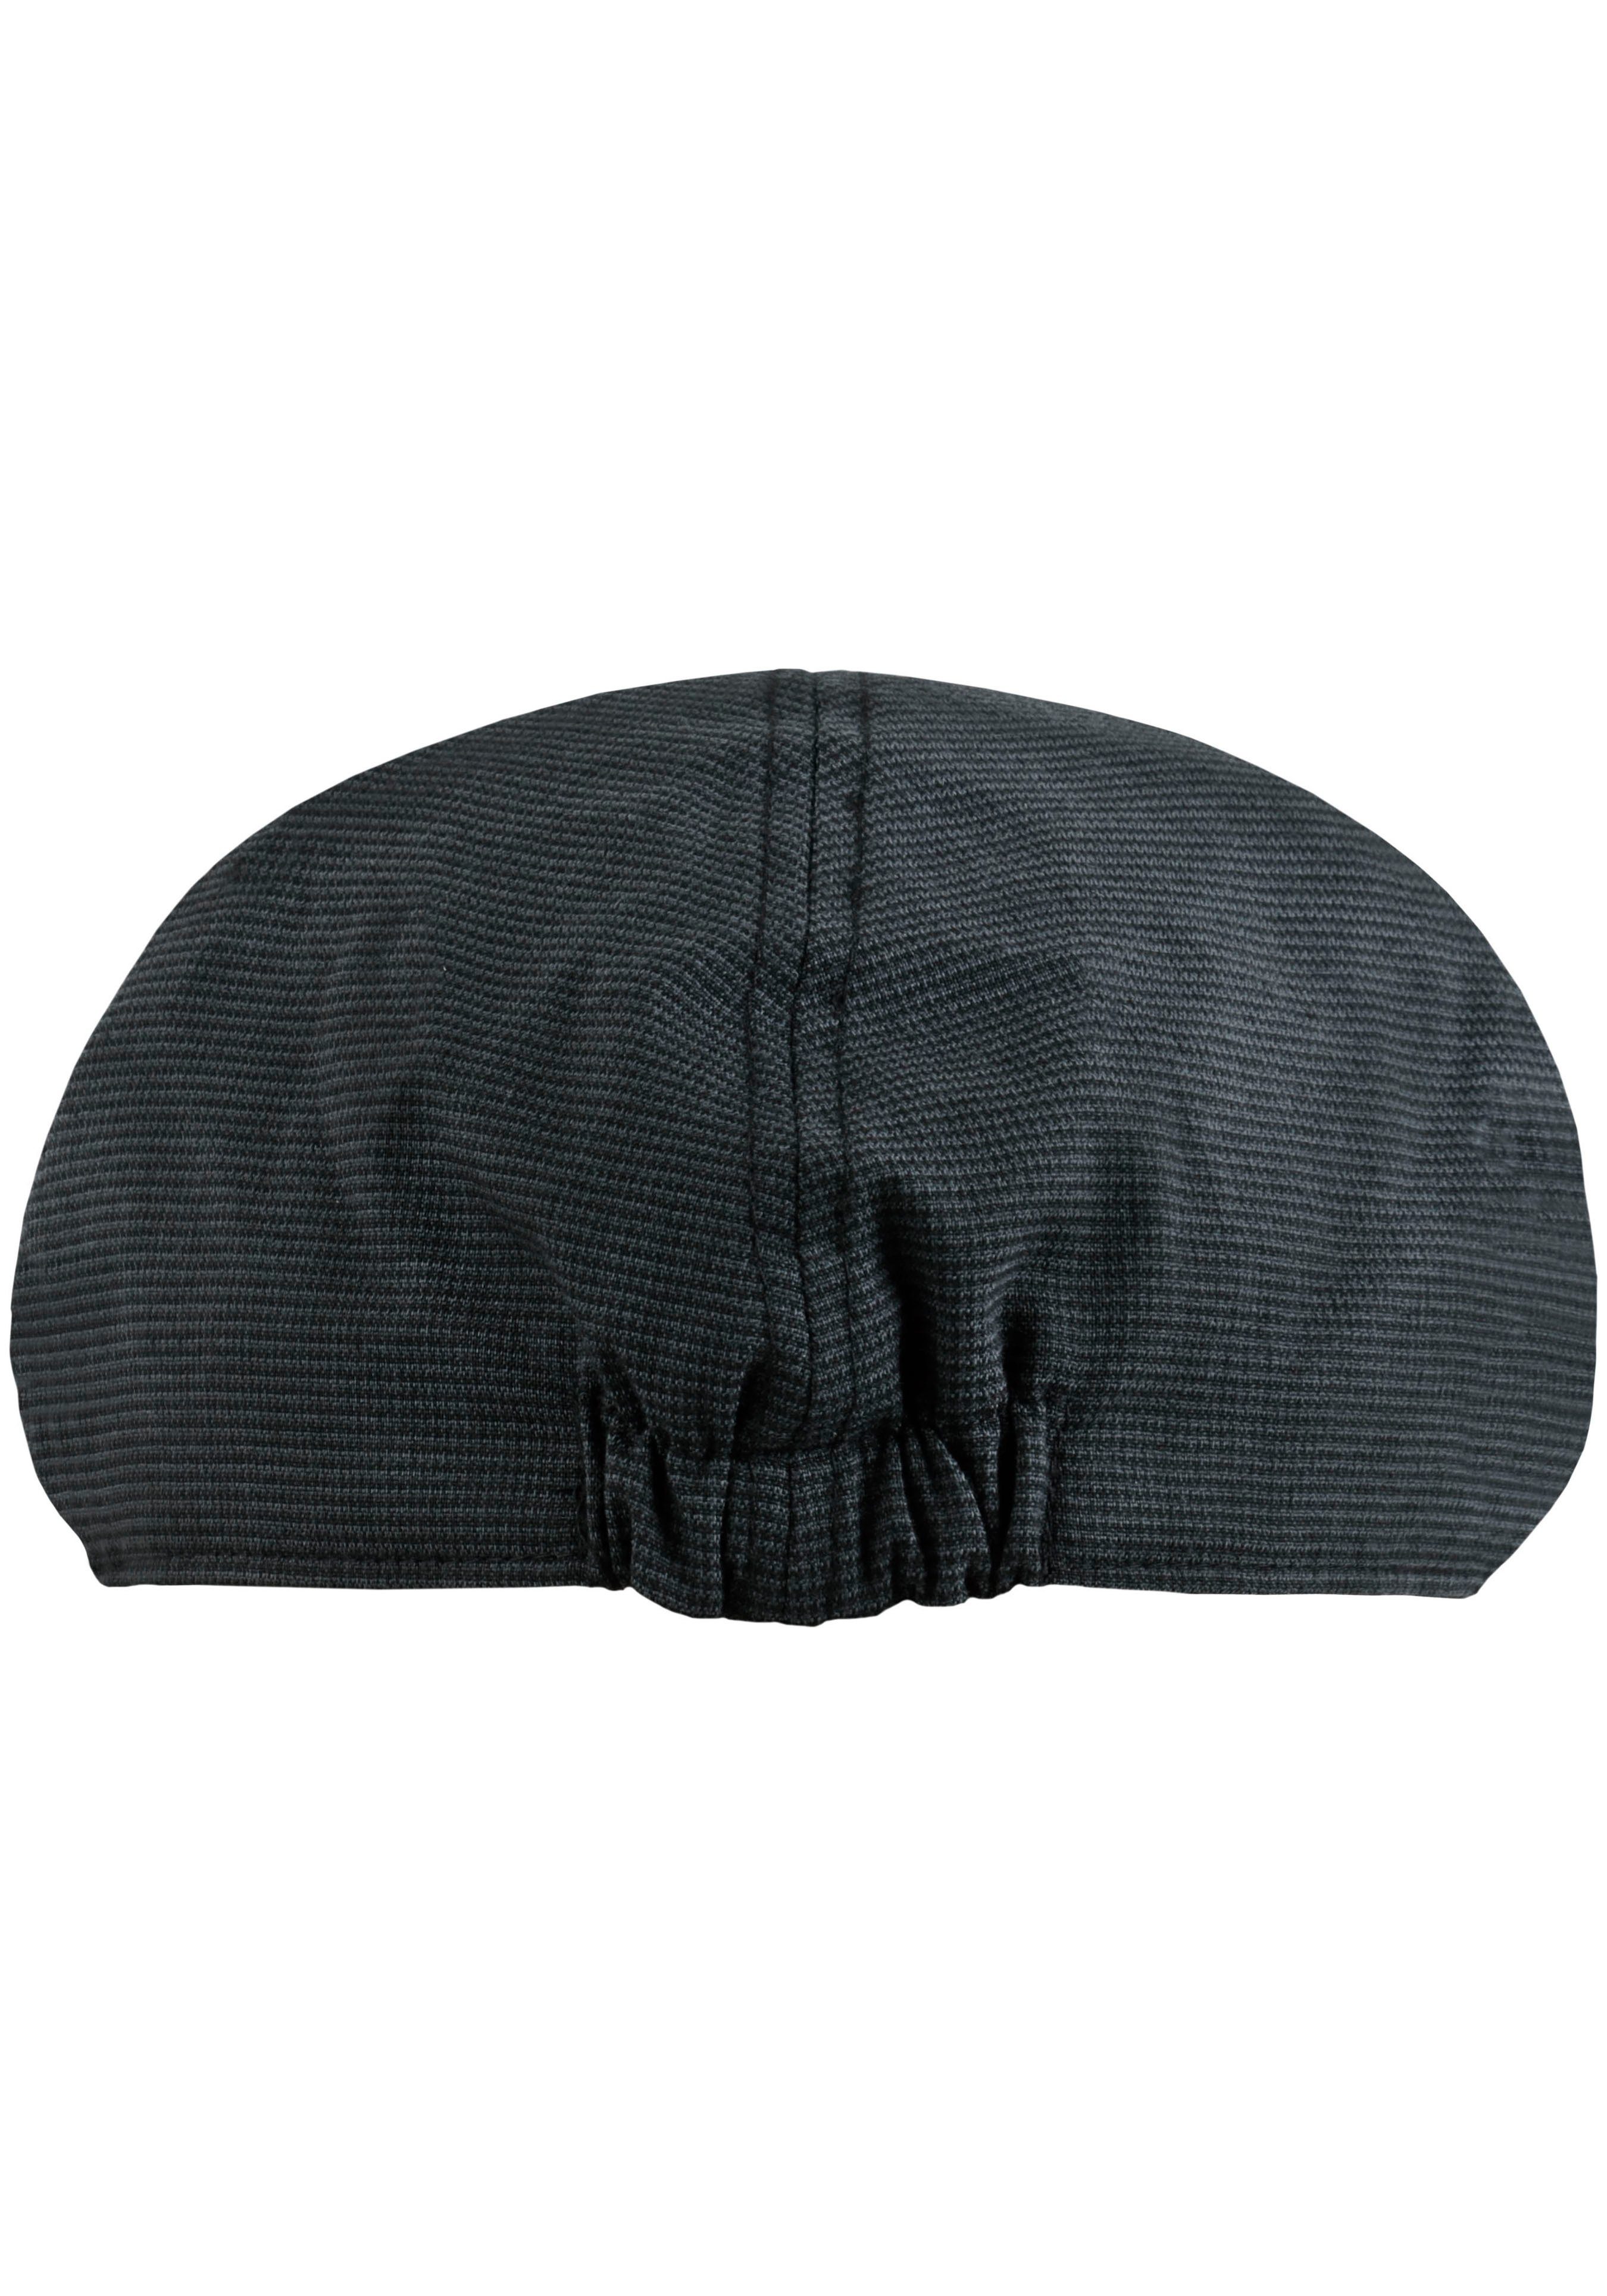 chillouts Schiebermütze Karomuster Flat Cap feinem grau-schwarz Kyoto Hat mit